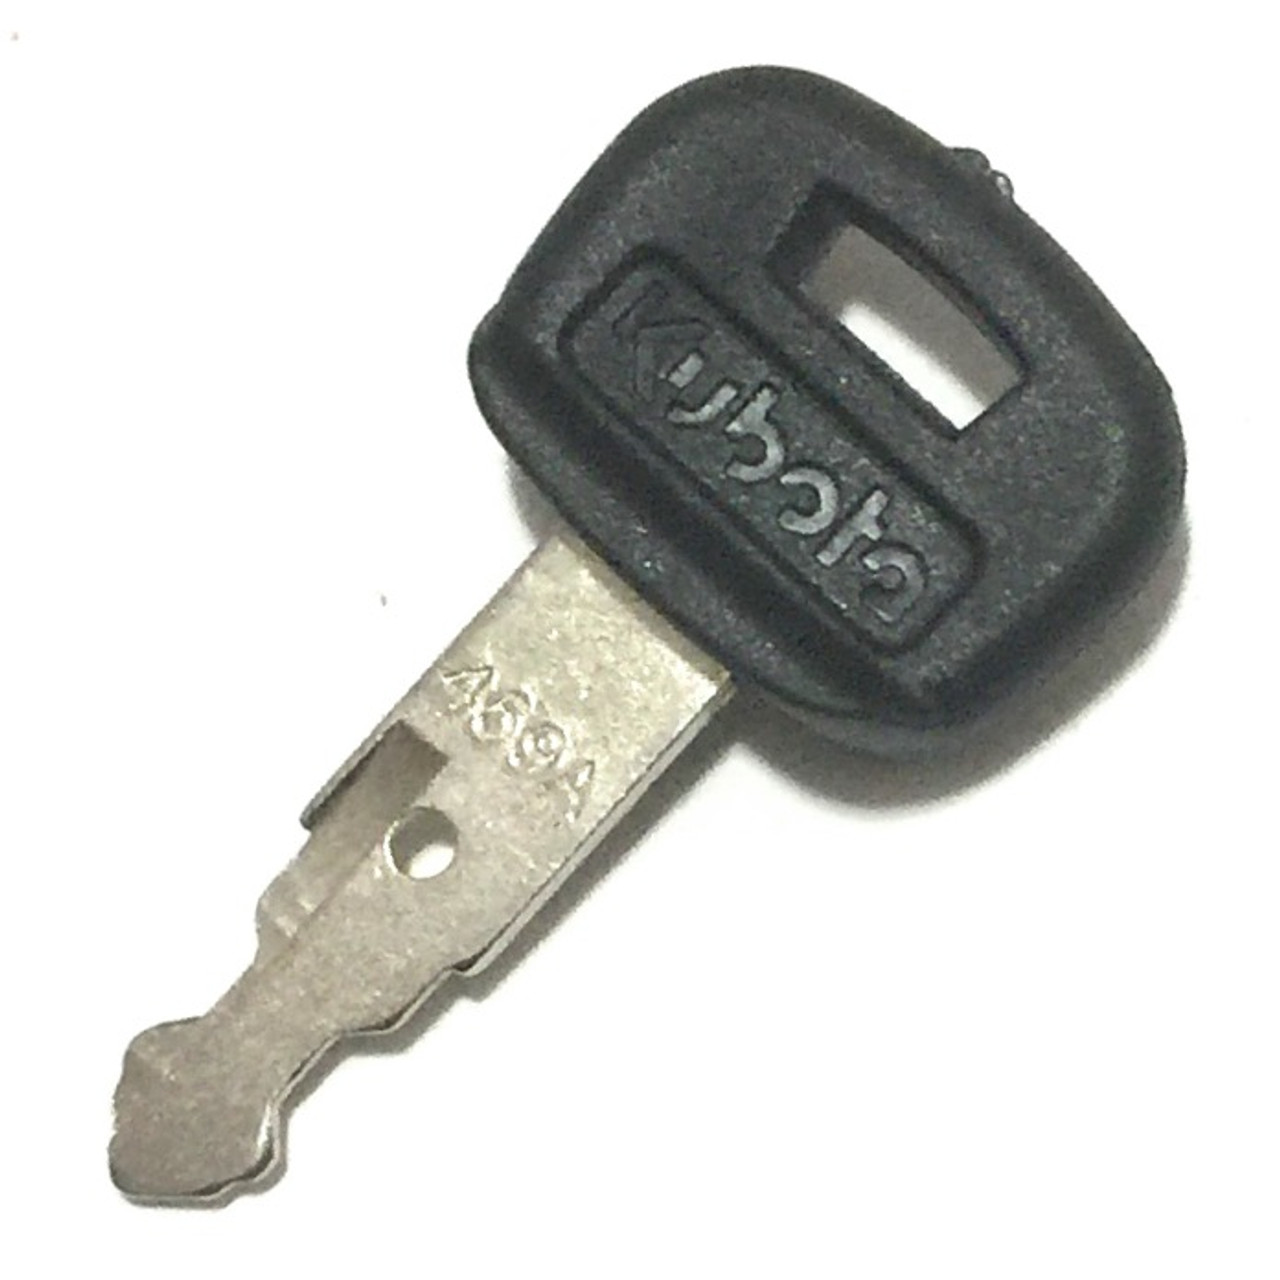 Kubota RC461-53630 Ignition Key